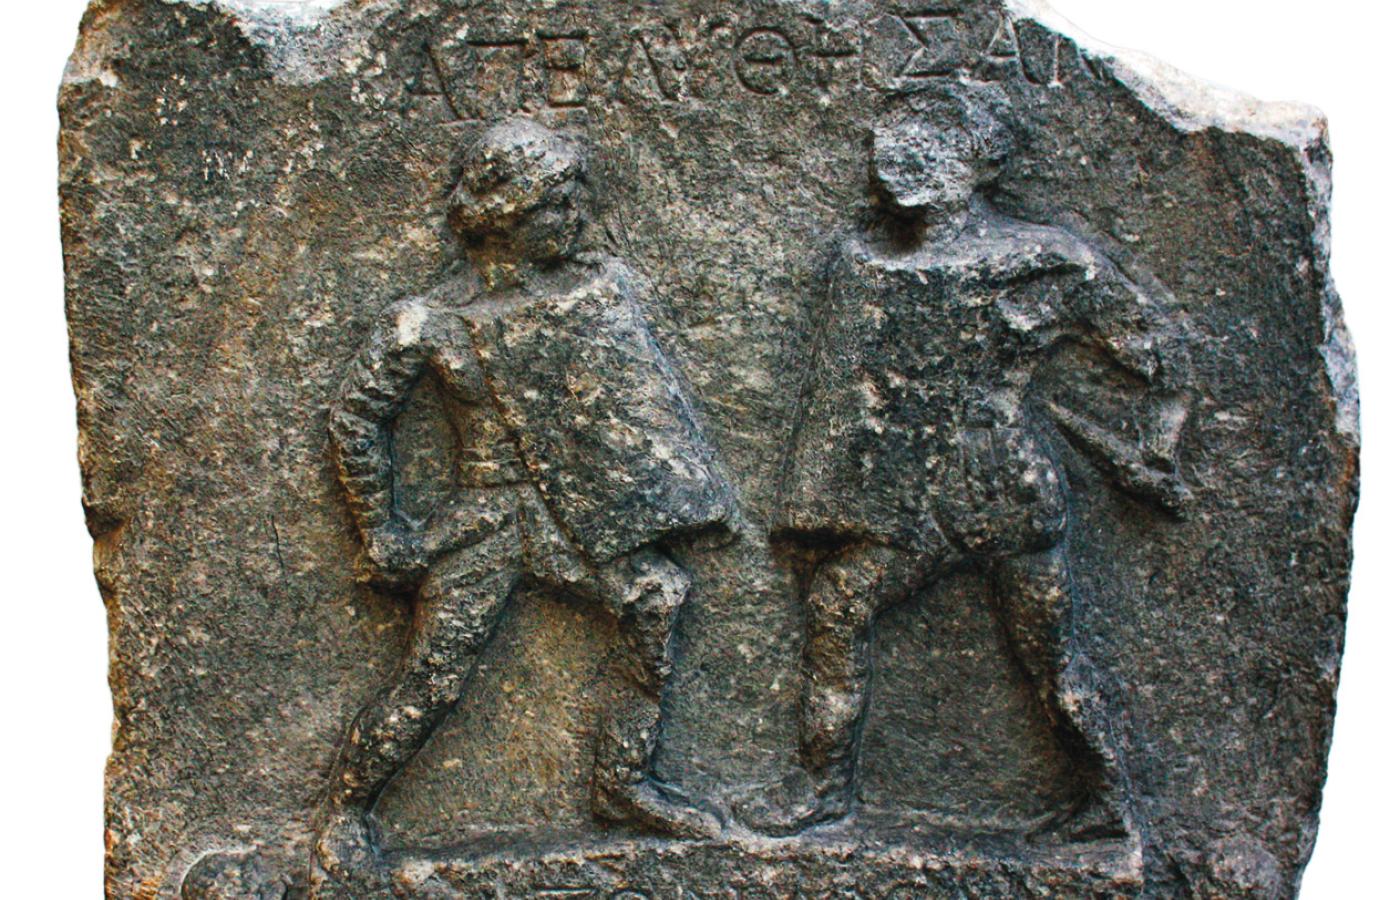 Płaskorzeźba przedstawiająca walczące gladiatorki, znaleziona na terenie współczesnej Turcji.